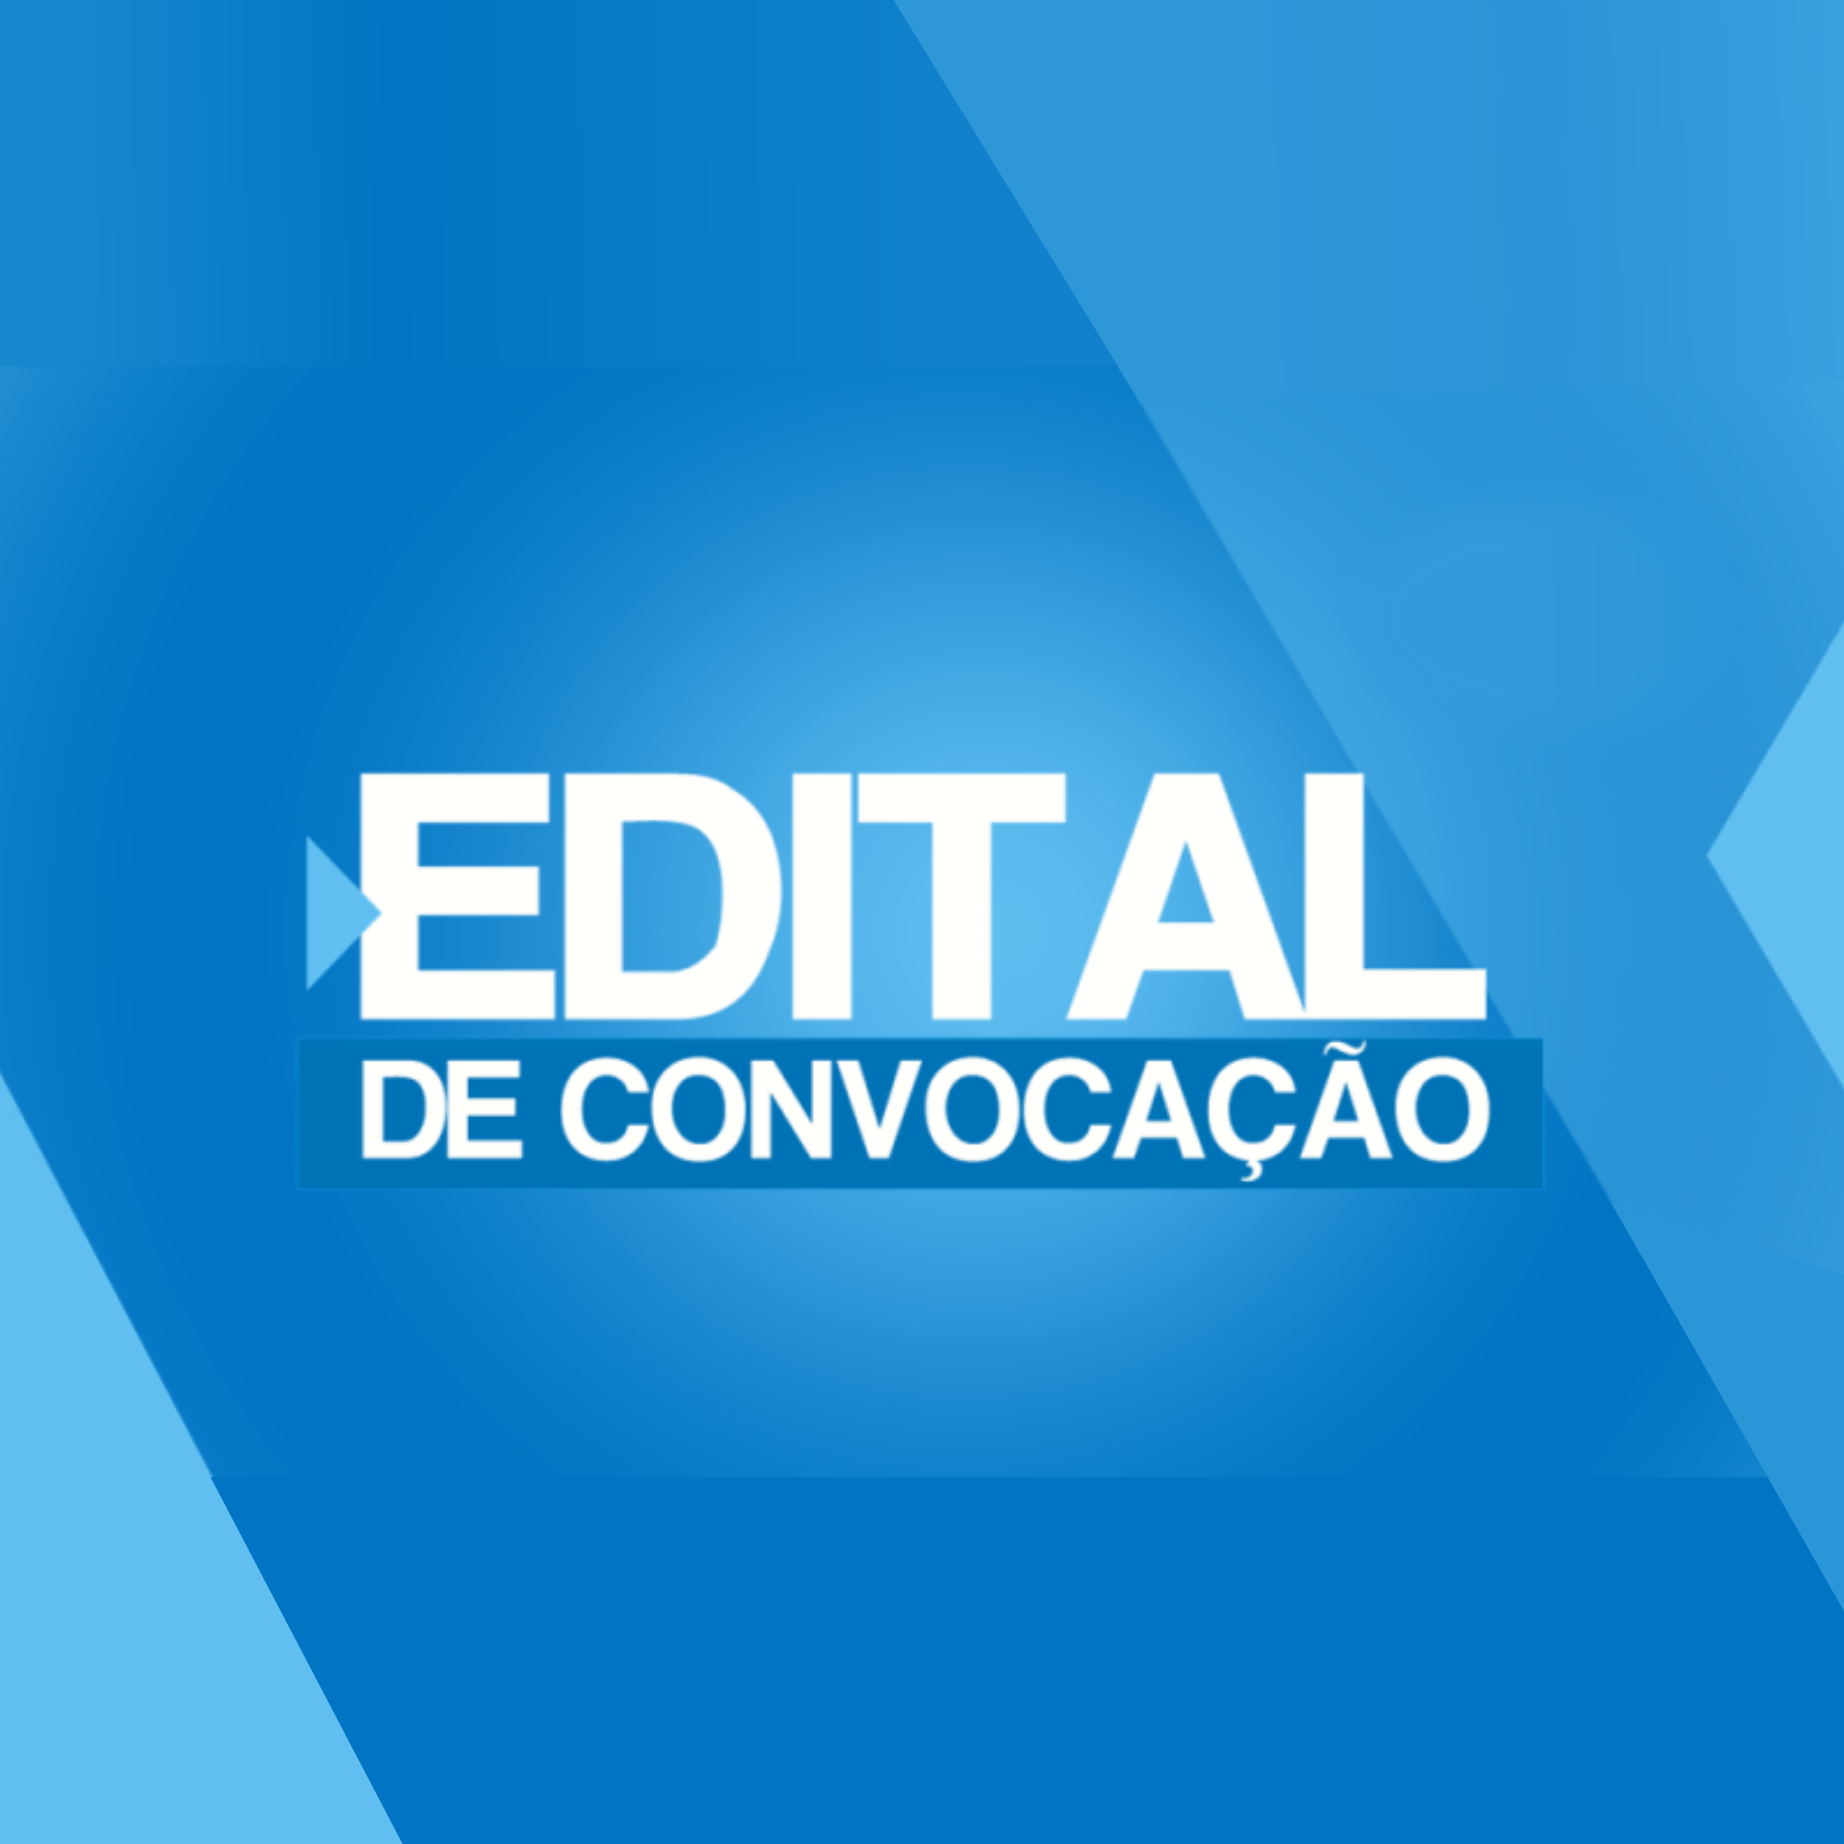 You are currently viewing EDUCAÇÃO: Edital de Convocação Nº 01/2021- Dispõe sobre o Processo Eleitoral para escolha de representantes de Organizações da Sociedade Civil